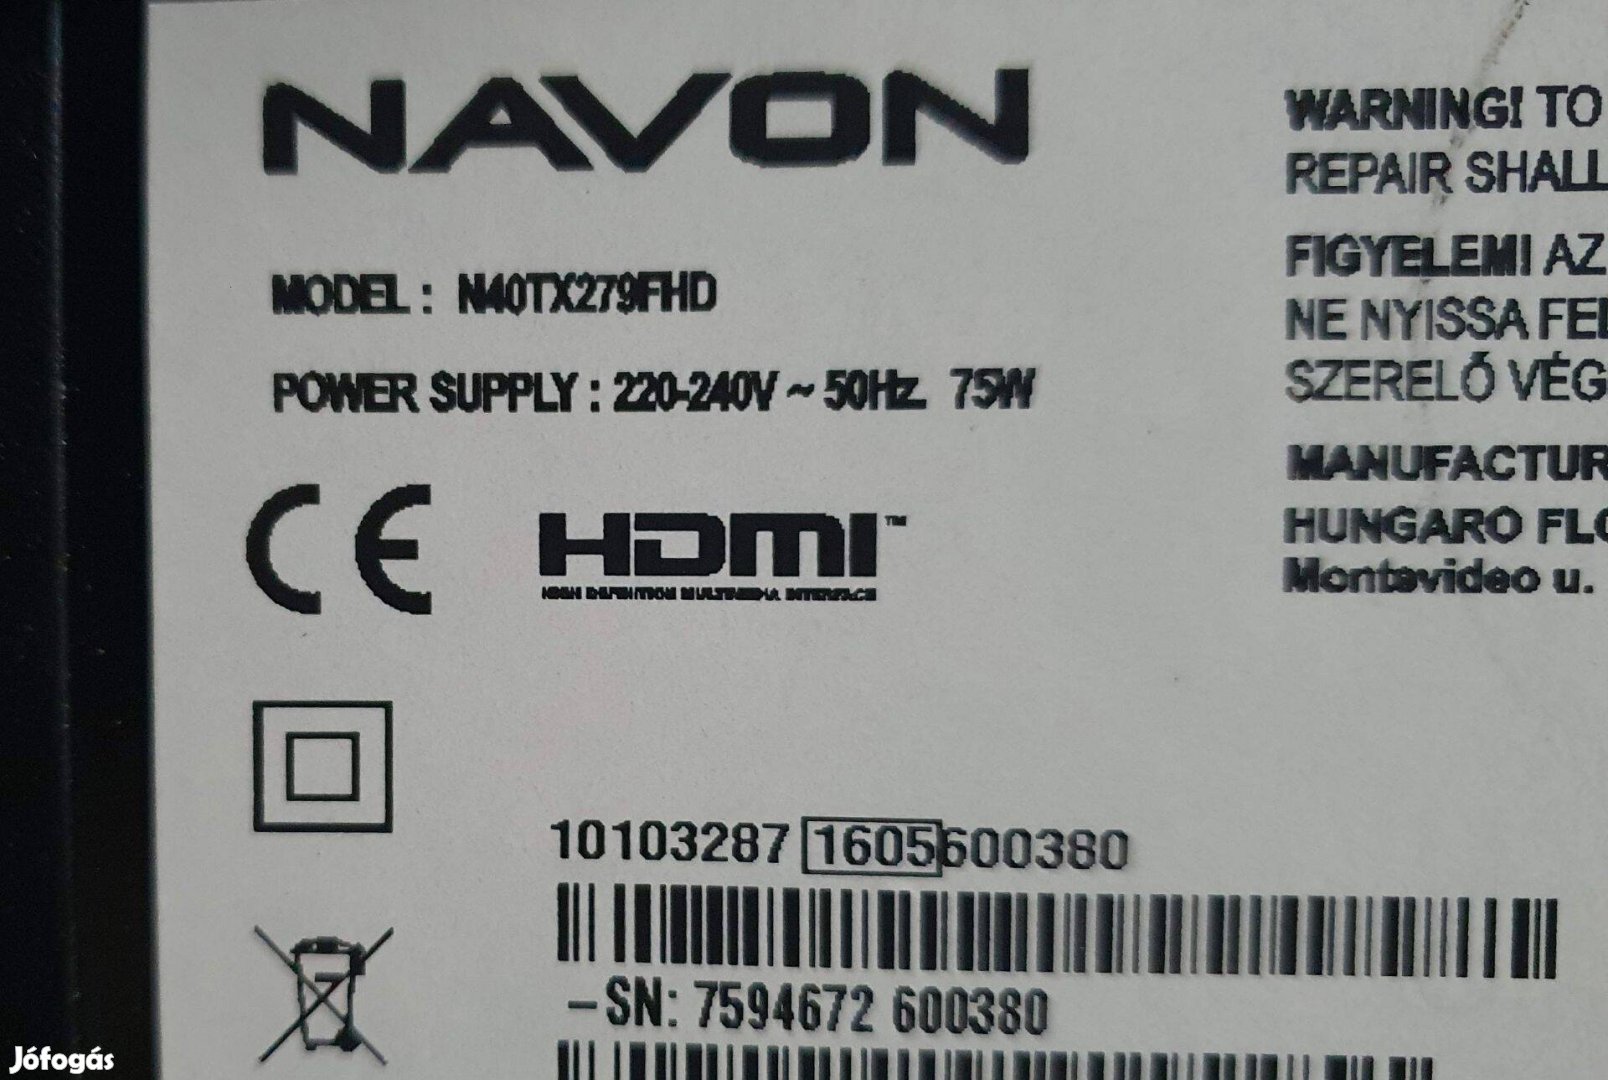 Navon N40TX279FHD 40" LED LCD tv hibás törött alkatrésznek